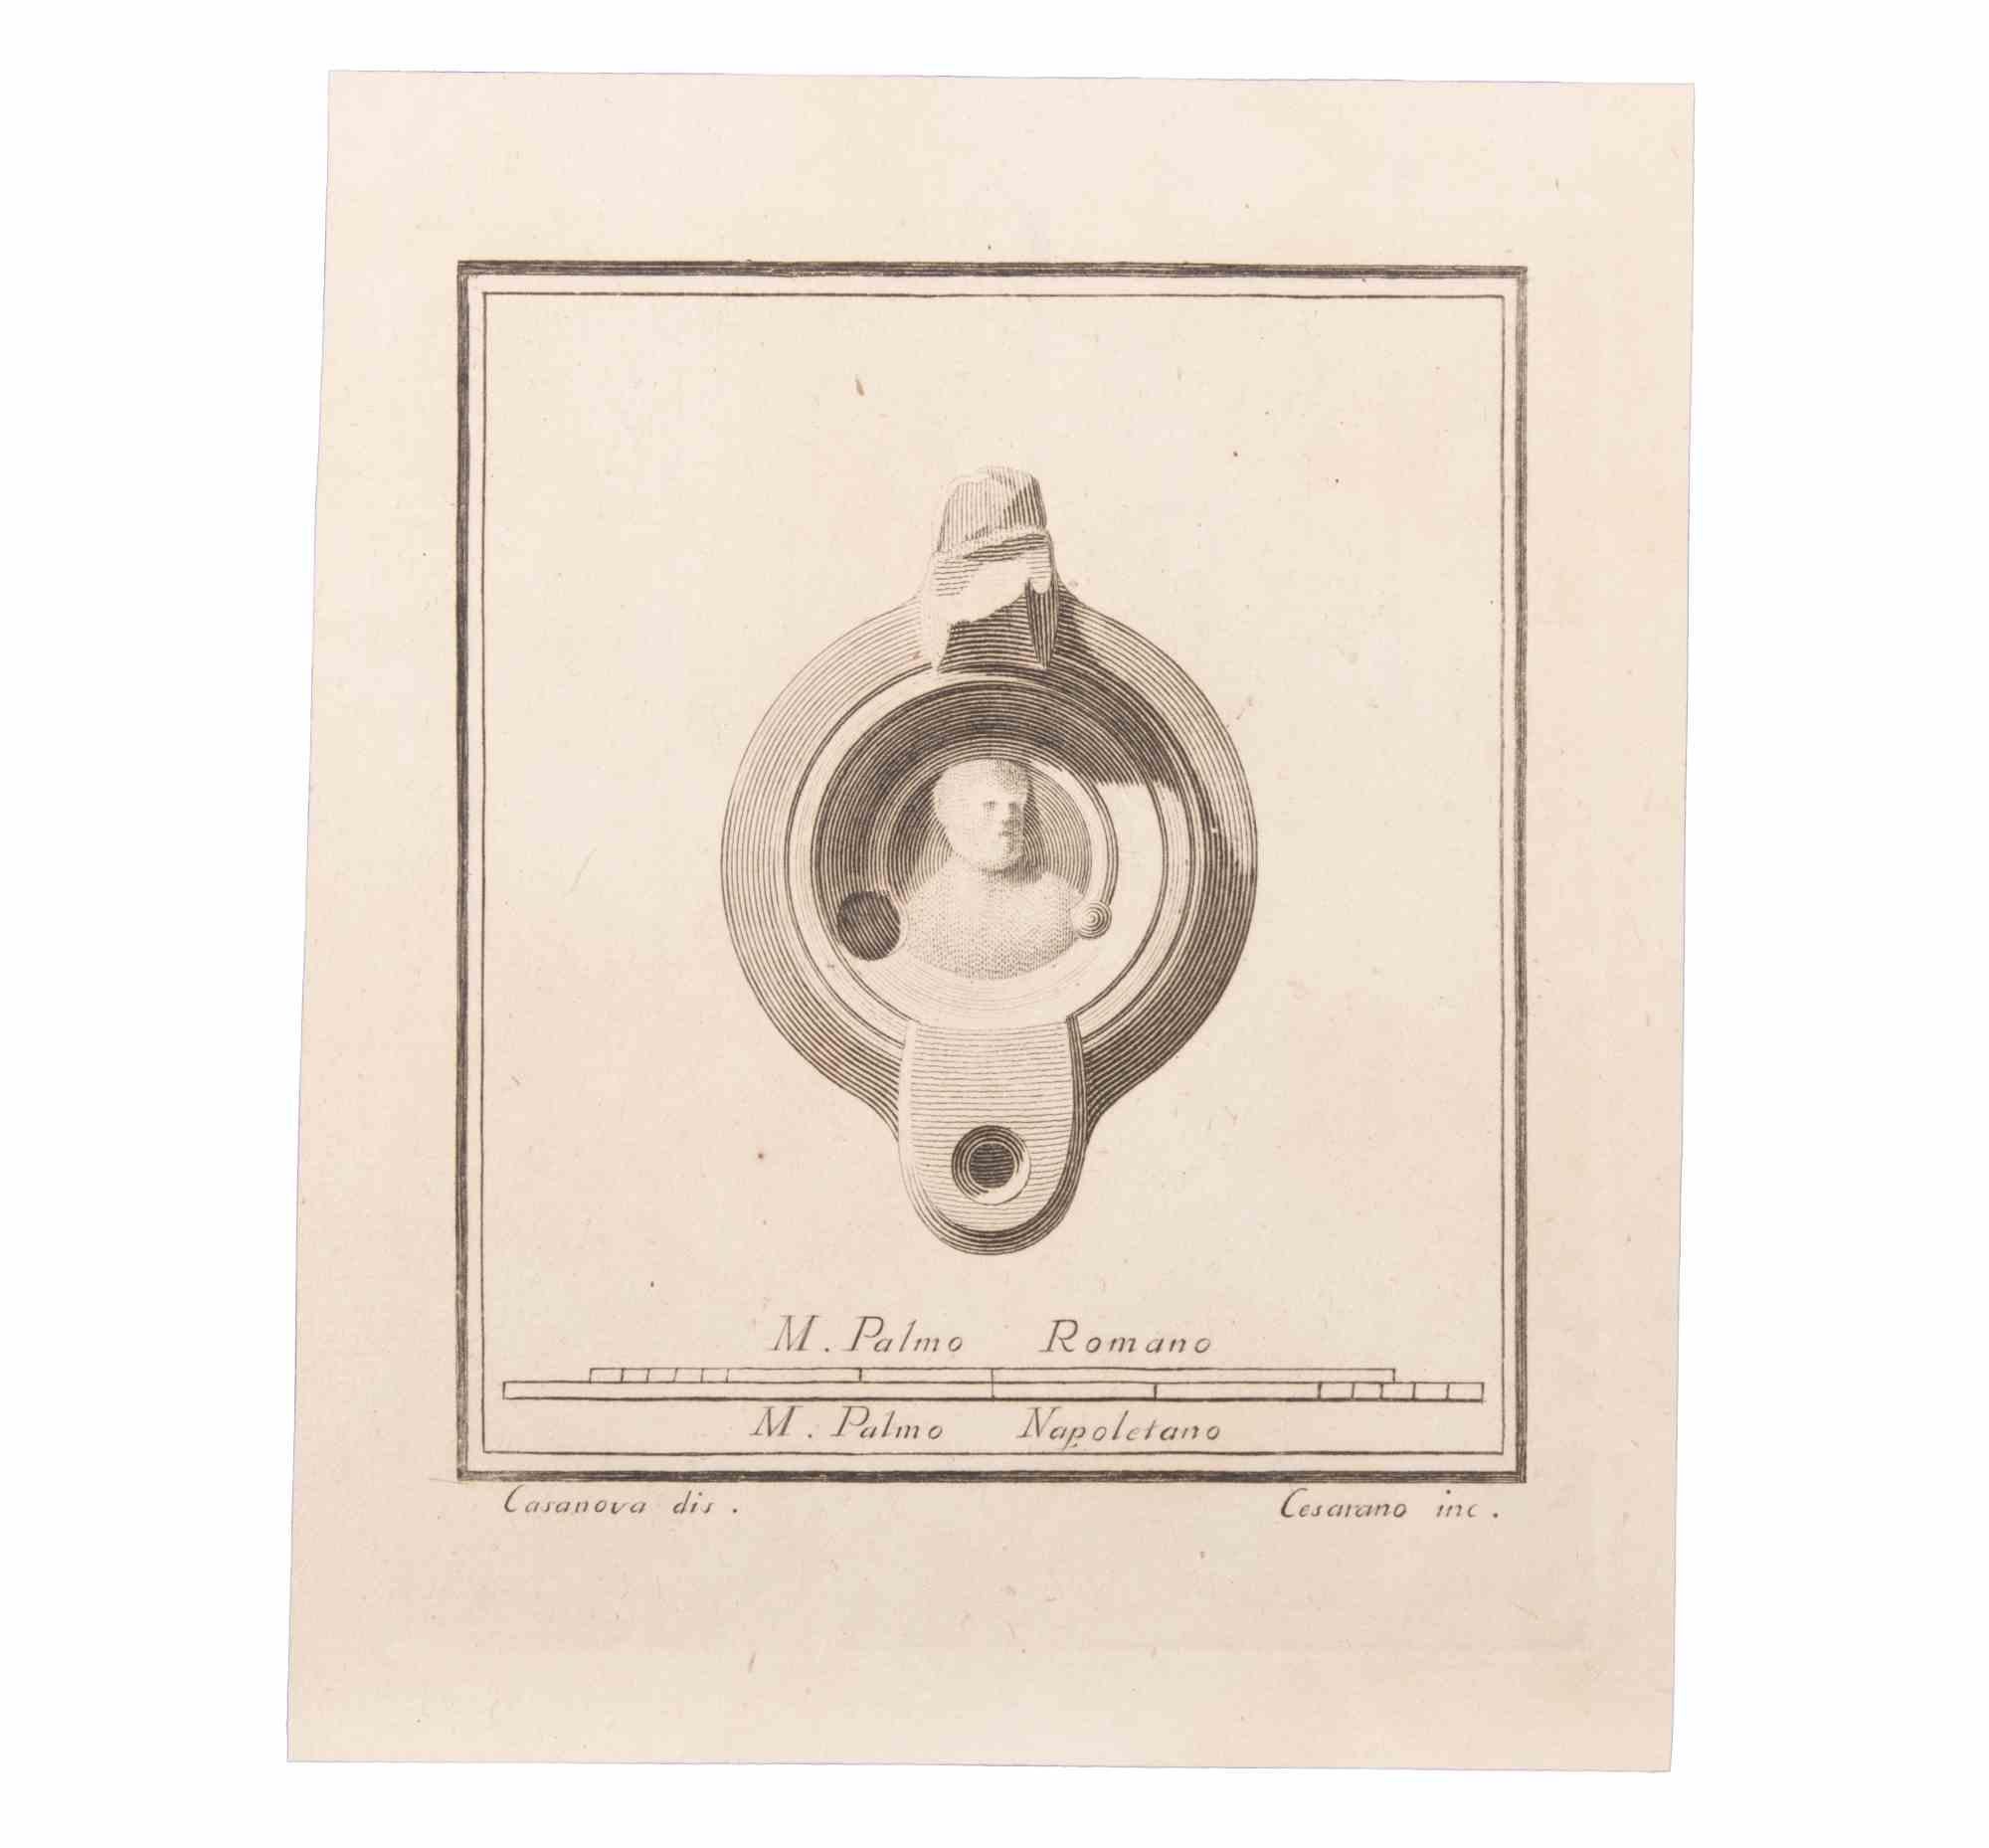 Lampe à huile avec décoration est une eau-forte réalisée par Niccolò Cesarano (1740-1815).

La gravure appartient à la suite d'estampes "Antiquités d'Herculanum exposées" (titre original : "Le Antichità di Ercolano Esposte"), un volume de huit